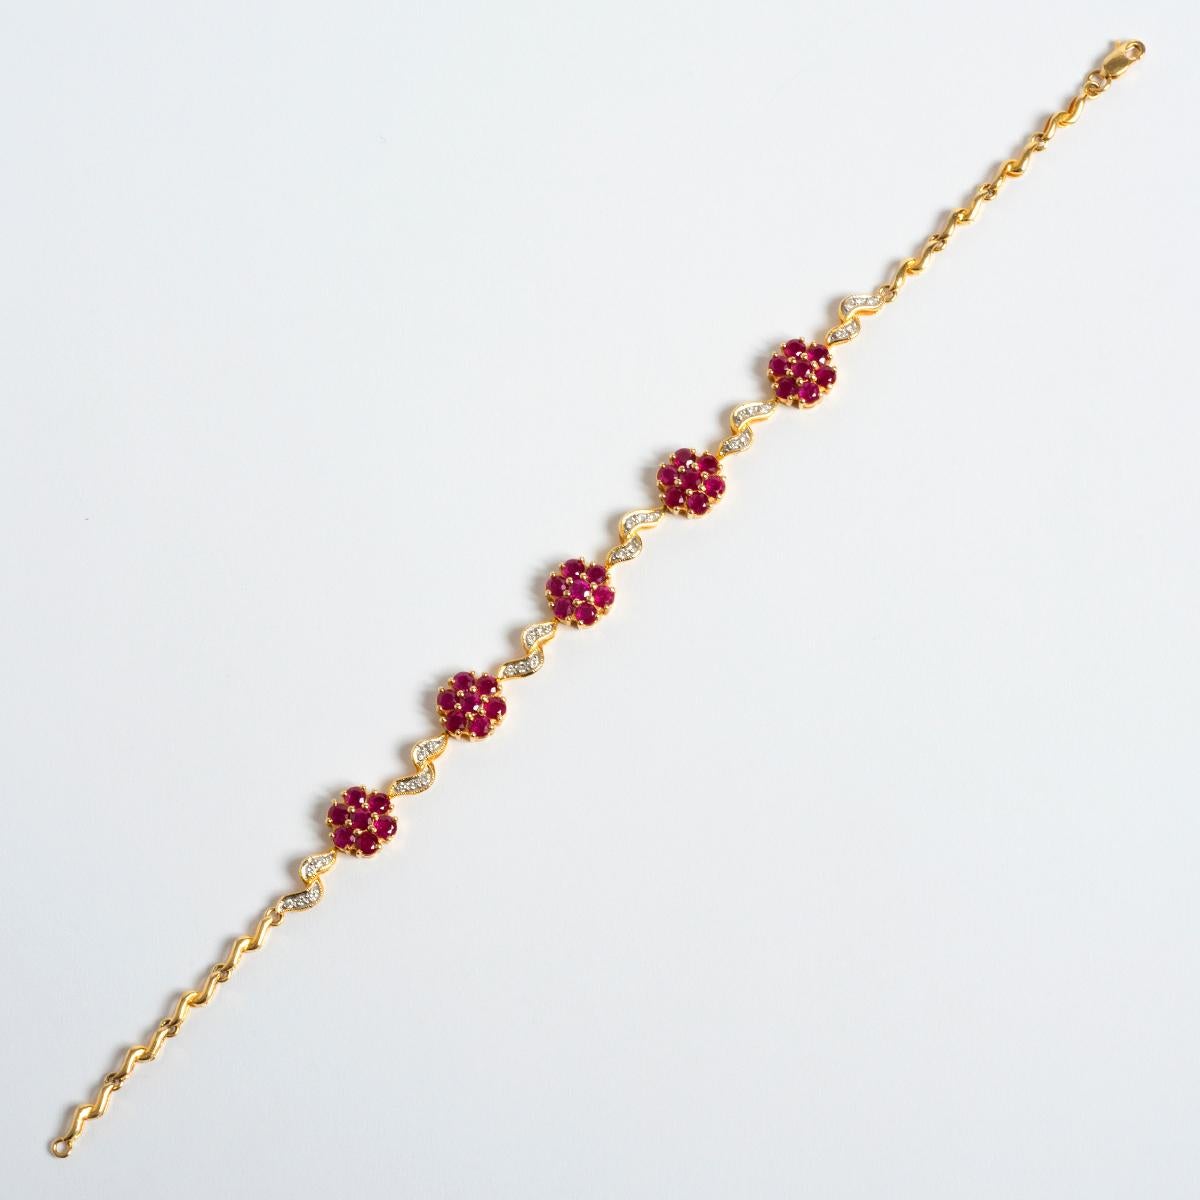 Taille ronde Magnifique bracelet en or jaune 18 carats avec rubis et diamants, cadeau idéal pour un être cher en vente